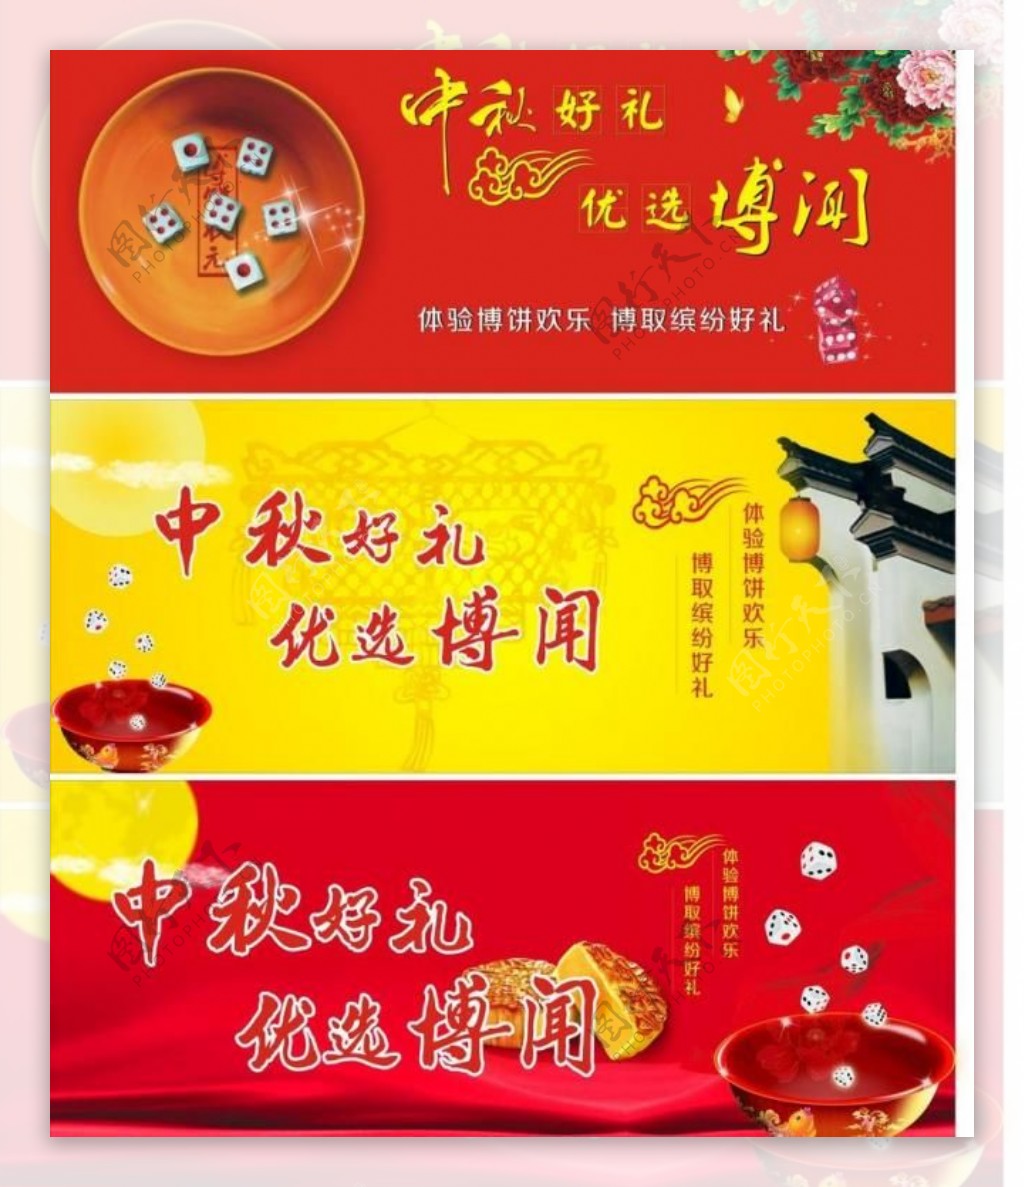 厦门中秋博饼广告宣传图片